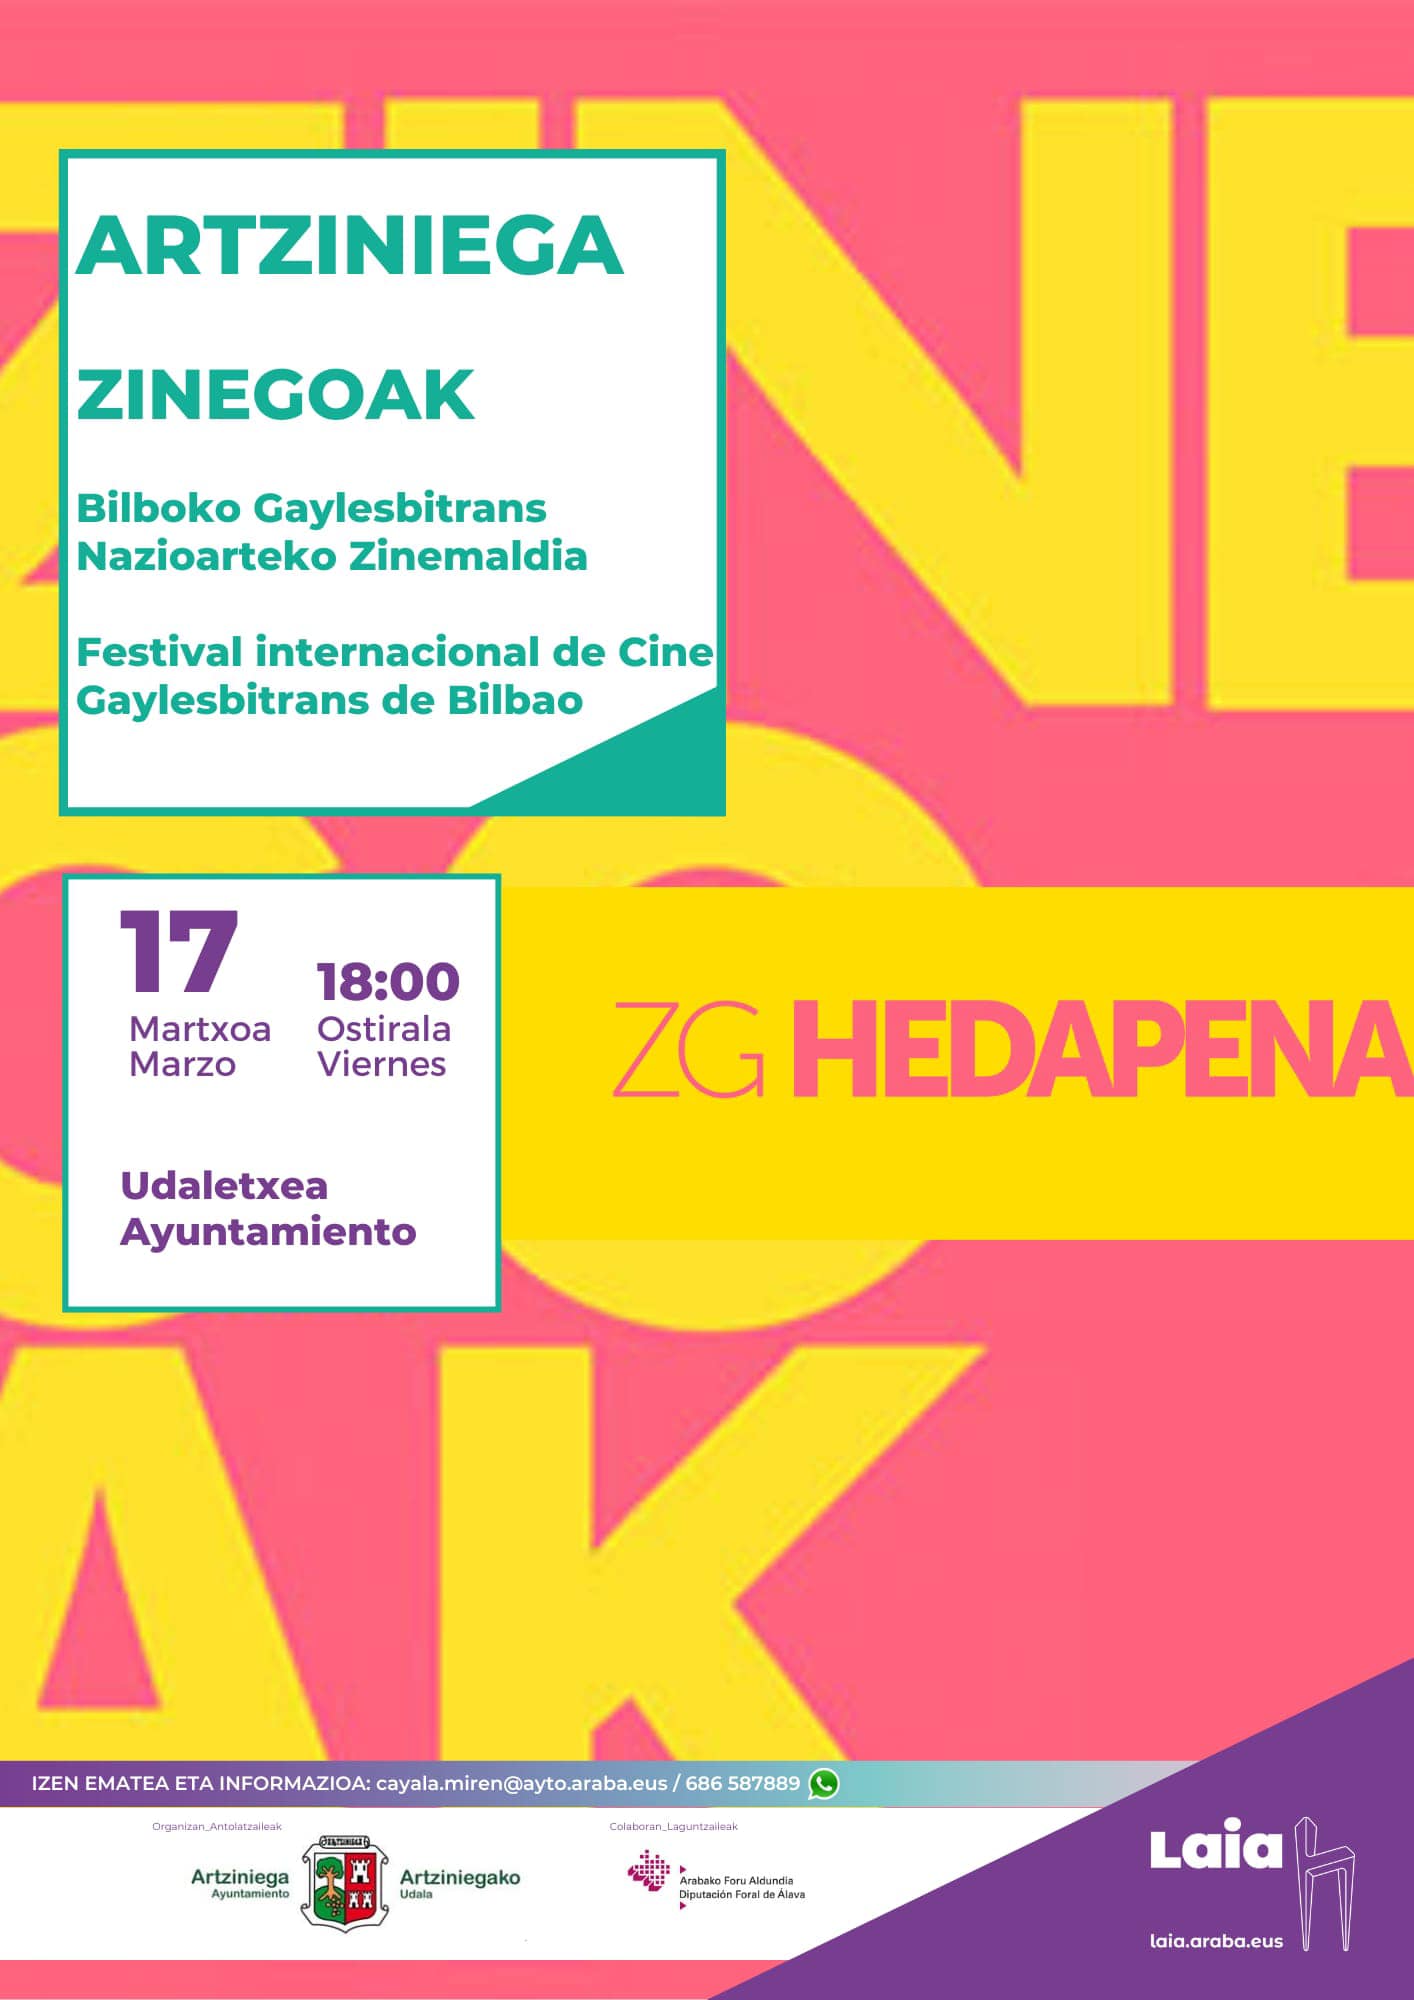 El viernes, 17 de marzo, a las 18:00 en el Ayuntamiento traeremos un pedacito de Zinegoak, el Festival Internacional de Cine Gaylesbitrans de Bilbao, a Artziniega.